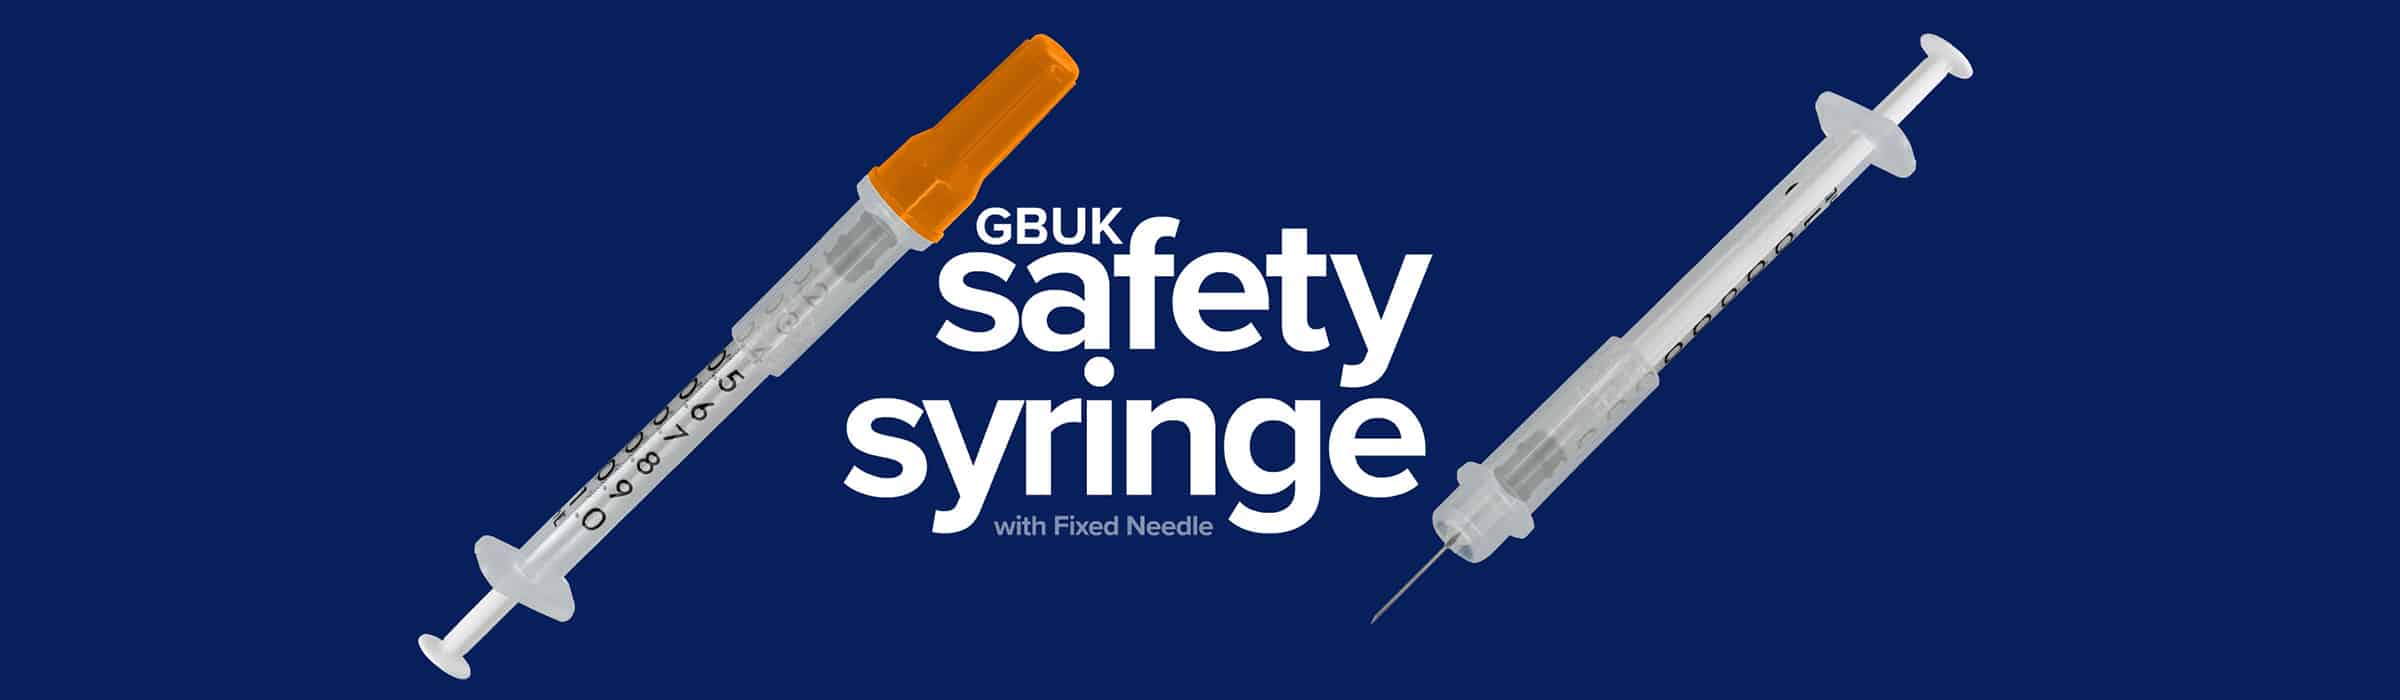 Safety Syringe with Fixed Needle